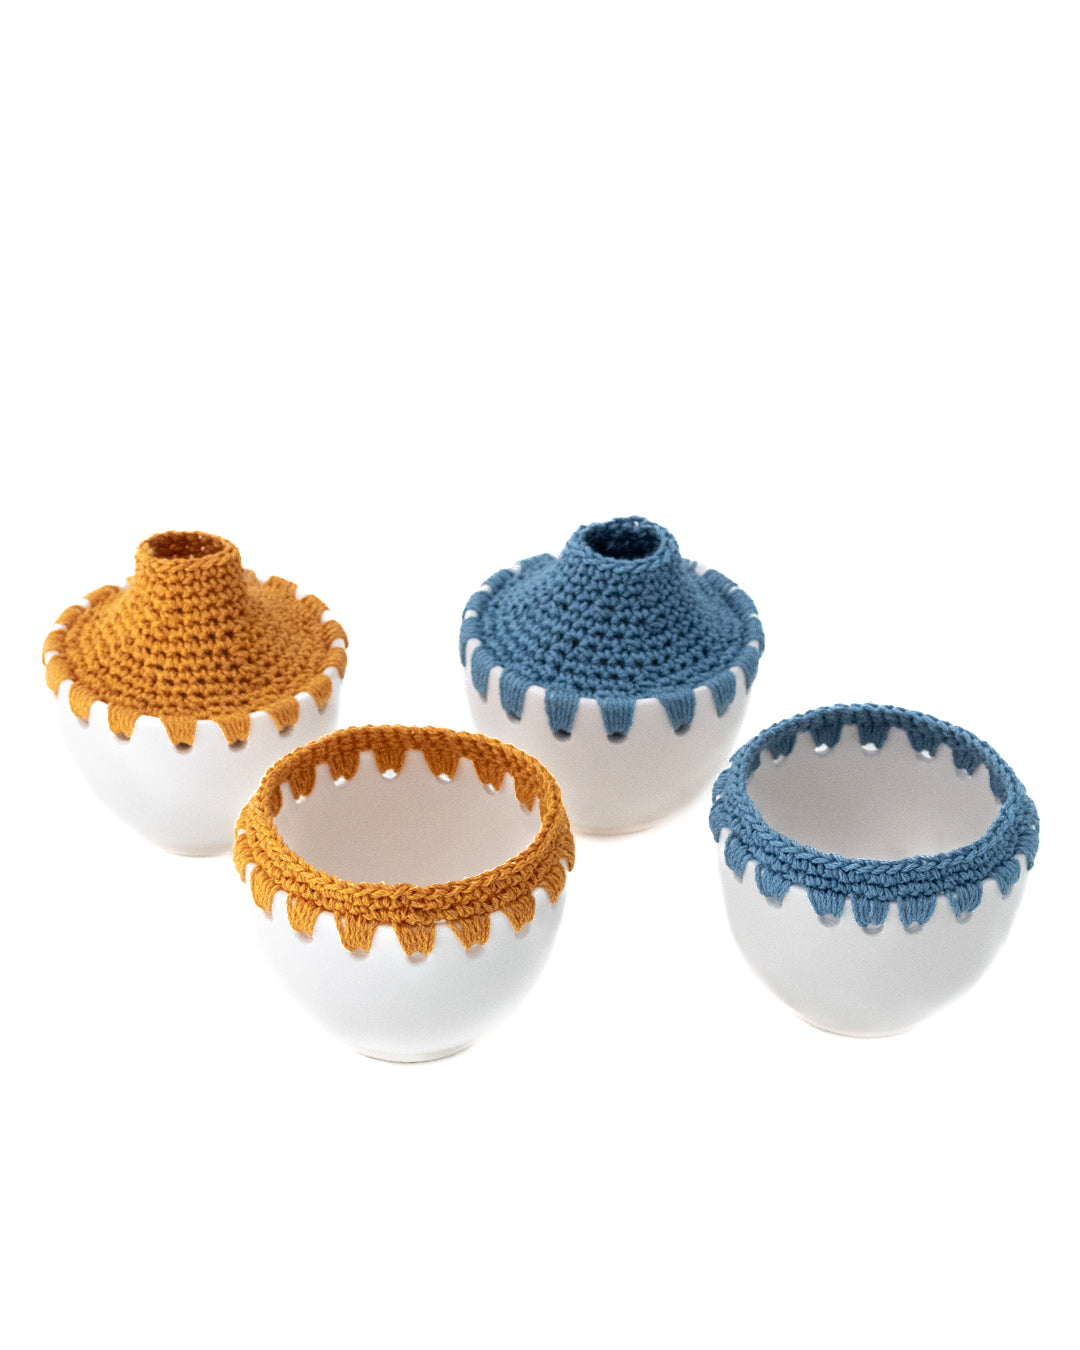 Ceramic Bowls - Set of 2